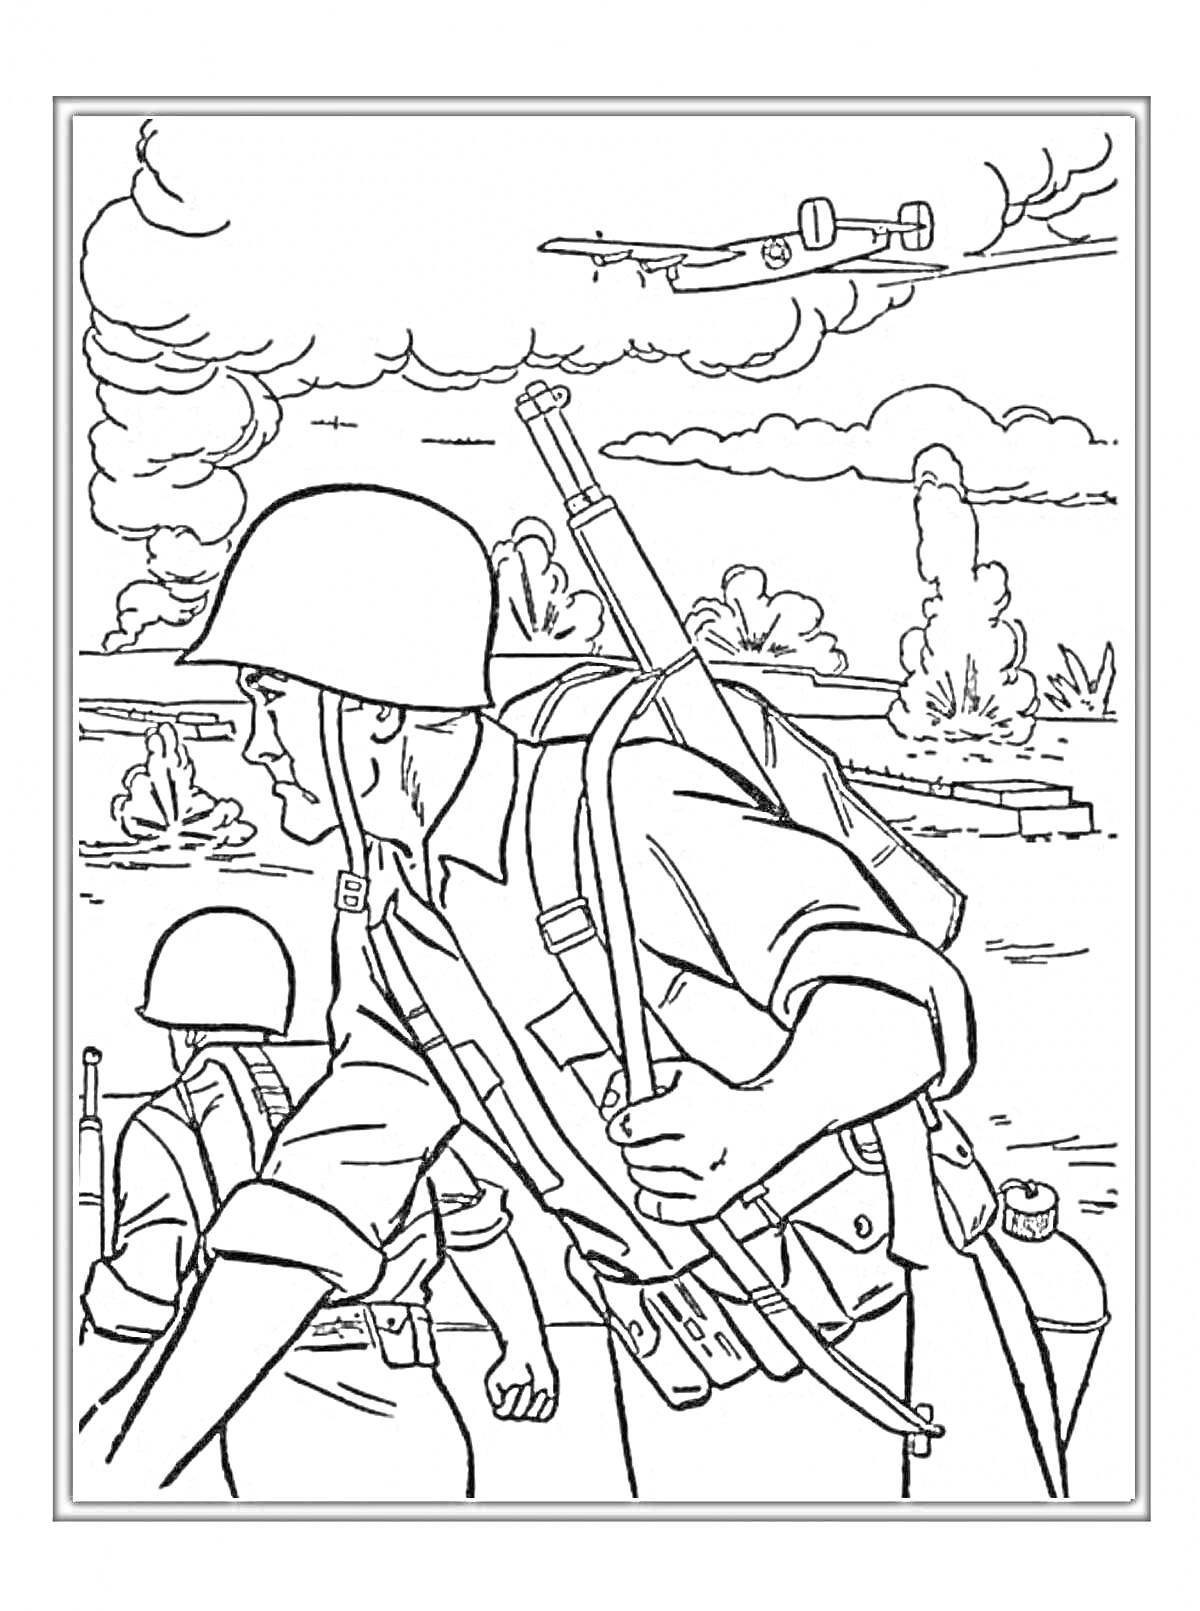 Раскраска Солдаты ВОВ на марше с винтовками, самолеты в небе, разрушенная местность с дымом и деревьями